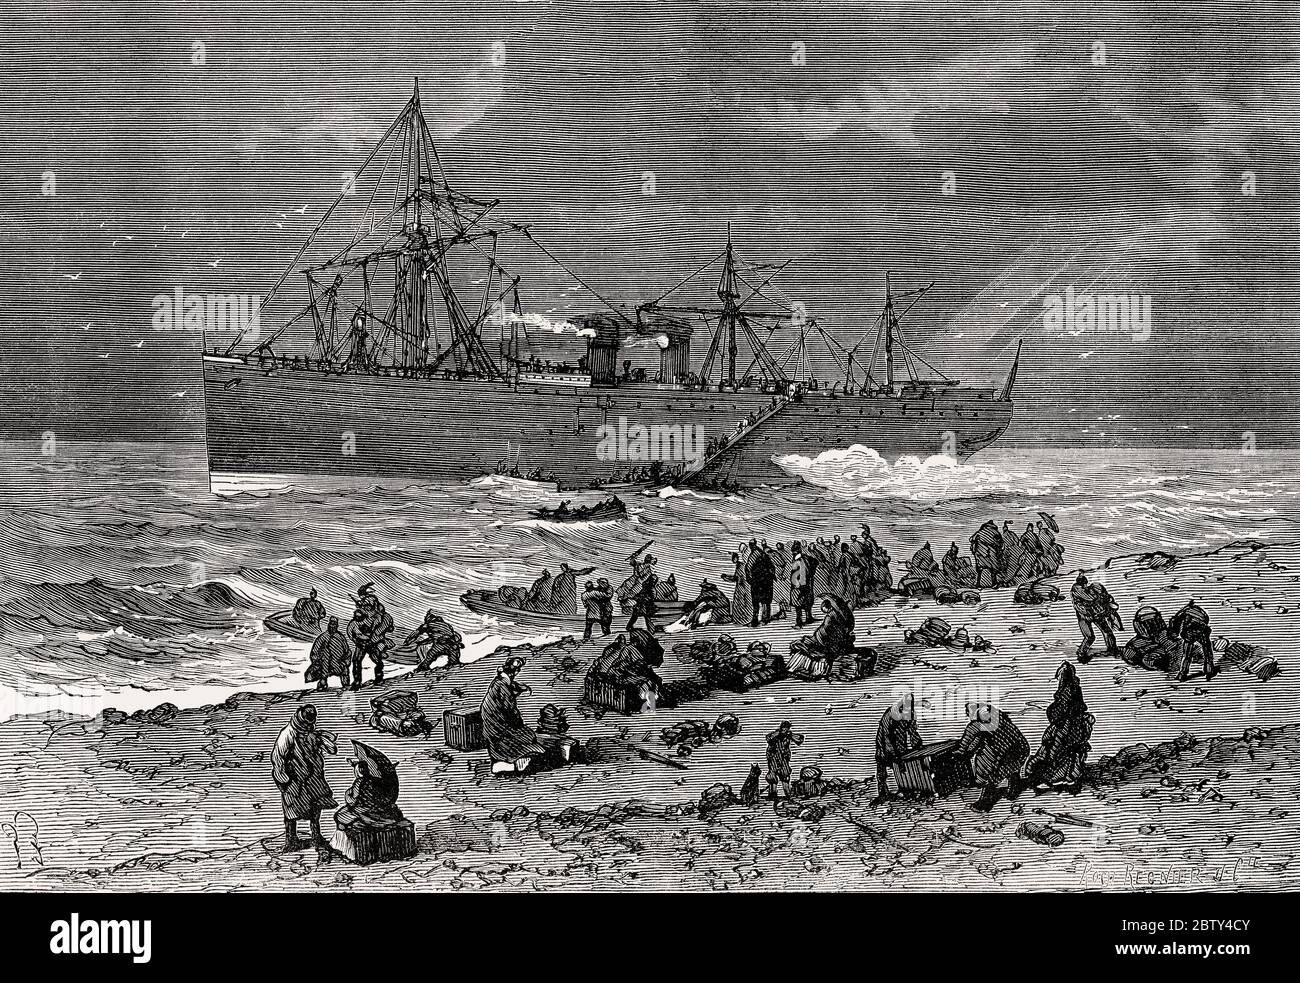 Der Ozeandampfer Empress Eugenie lief am 7. Januar 1877 in Seabright an der Küste von Jersey auf Grund Stockfoto